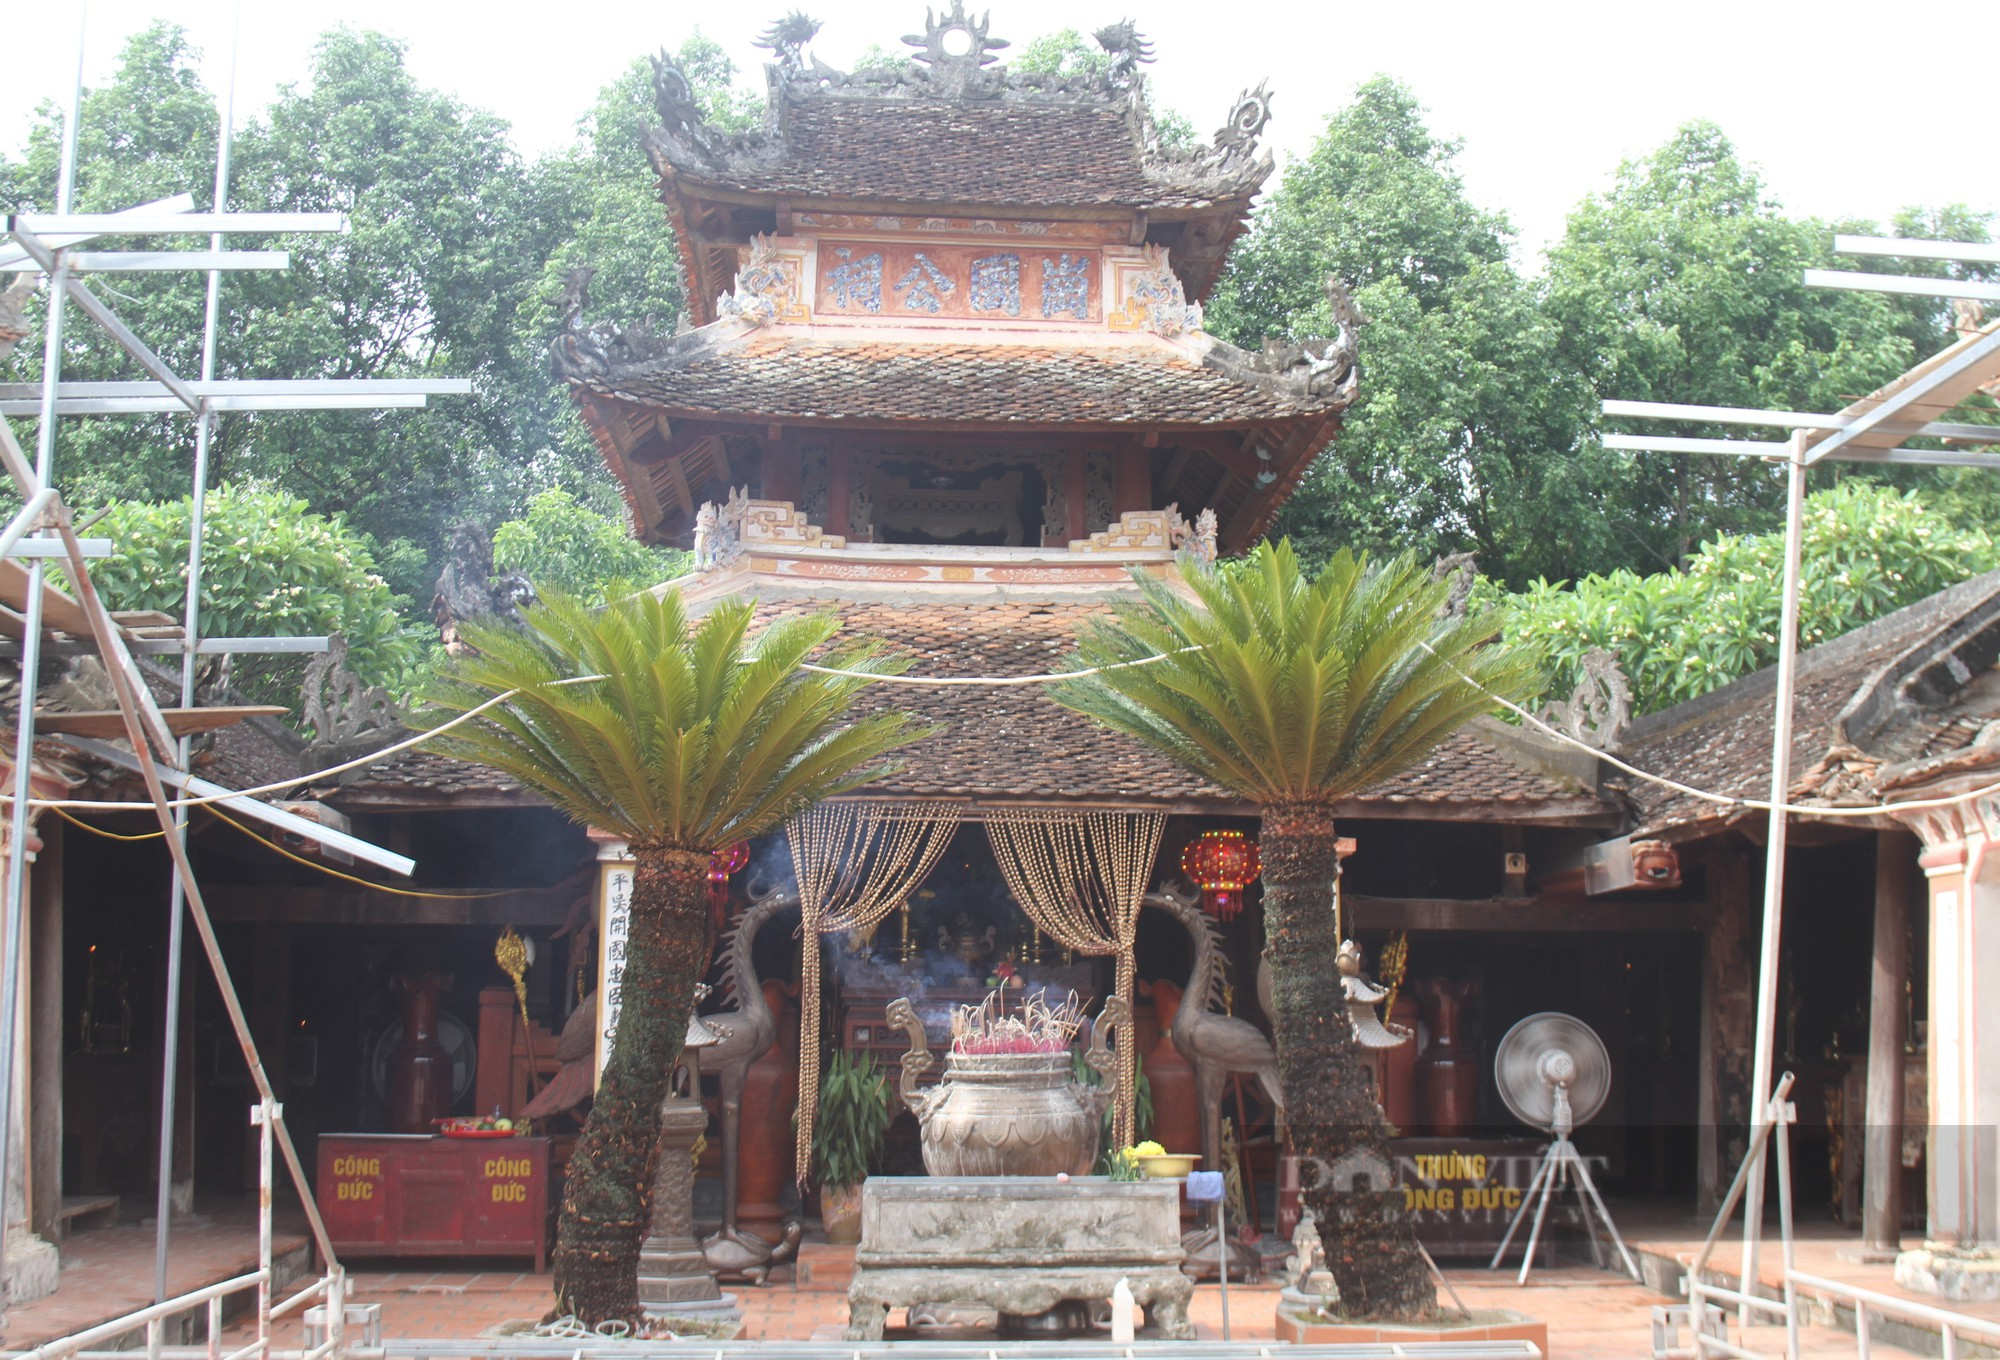 Ngôi đền hơn 550 năm tuổi thờ vị tướng từng vào sinh ra tử với vua Lê Lợi, phò trợ 4 đời vua - Ảnh 3.